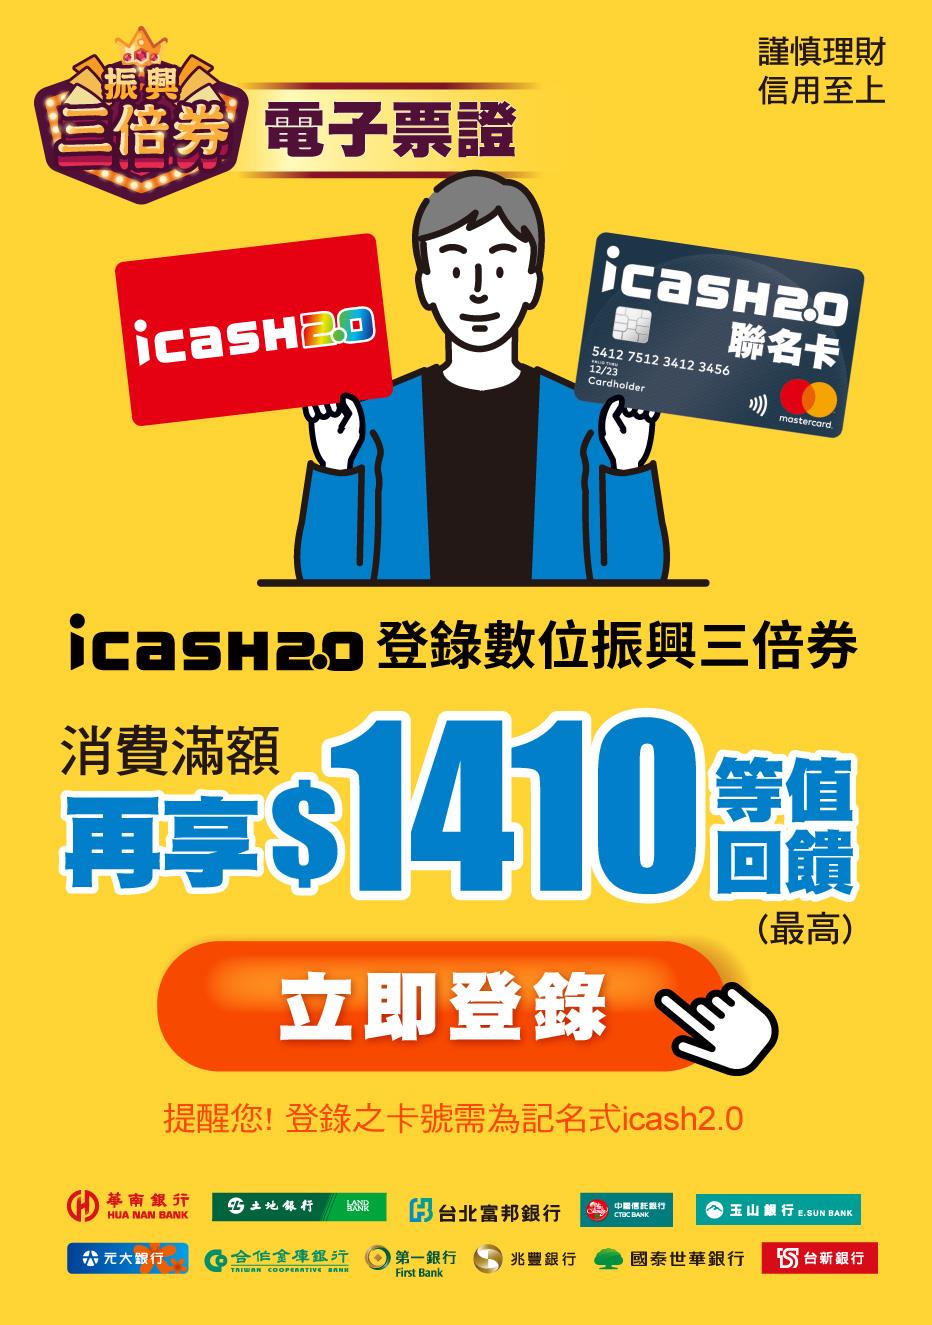 icash2.0登錄數位振興三倍券，享300元等值回饋，星巴克好友分享券